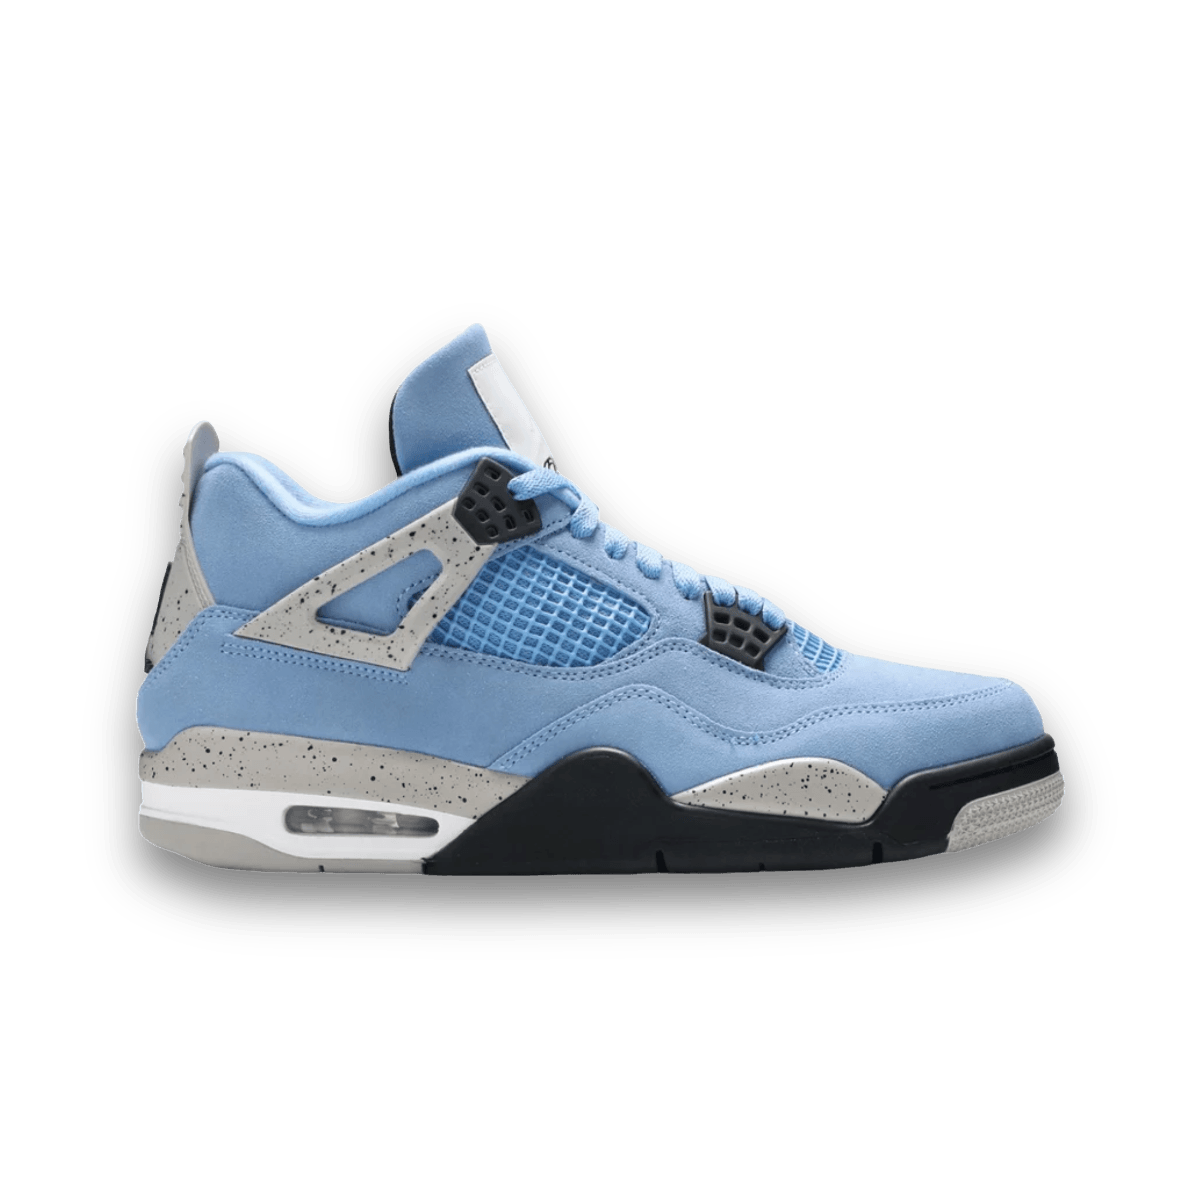 Jordan 4 Retro University Blue - Mid Sneaker - Jawns on Fire Sneakers & Streetwear